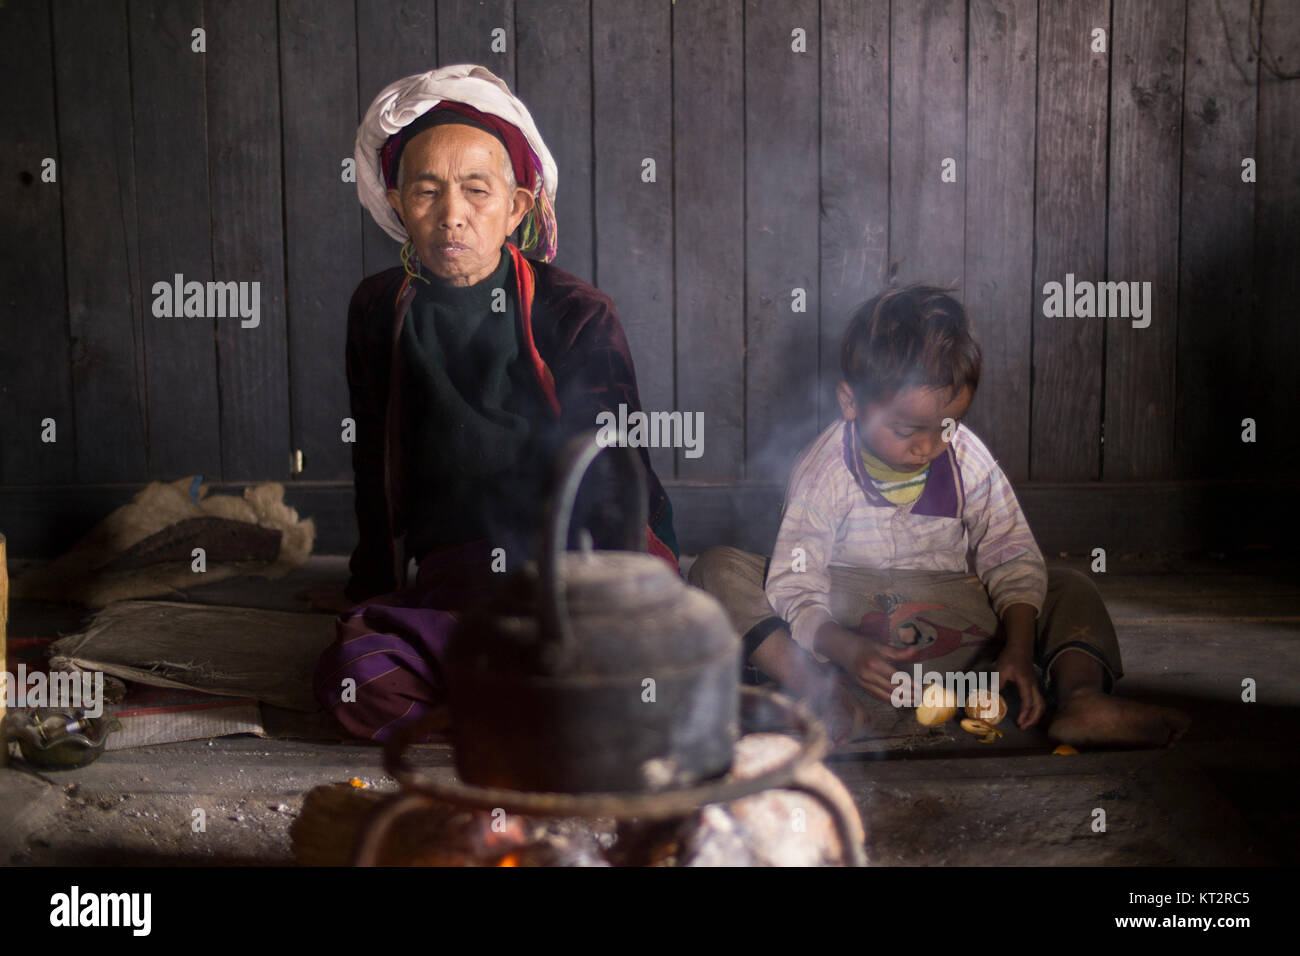 Ein älterer Palaung Frau trägt eine bunte ethnische Kostüm sitzt am Feuer neben einem jungen kleinen Jungen in ihr Haus im Dorf. Stockfoto